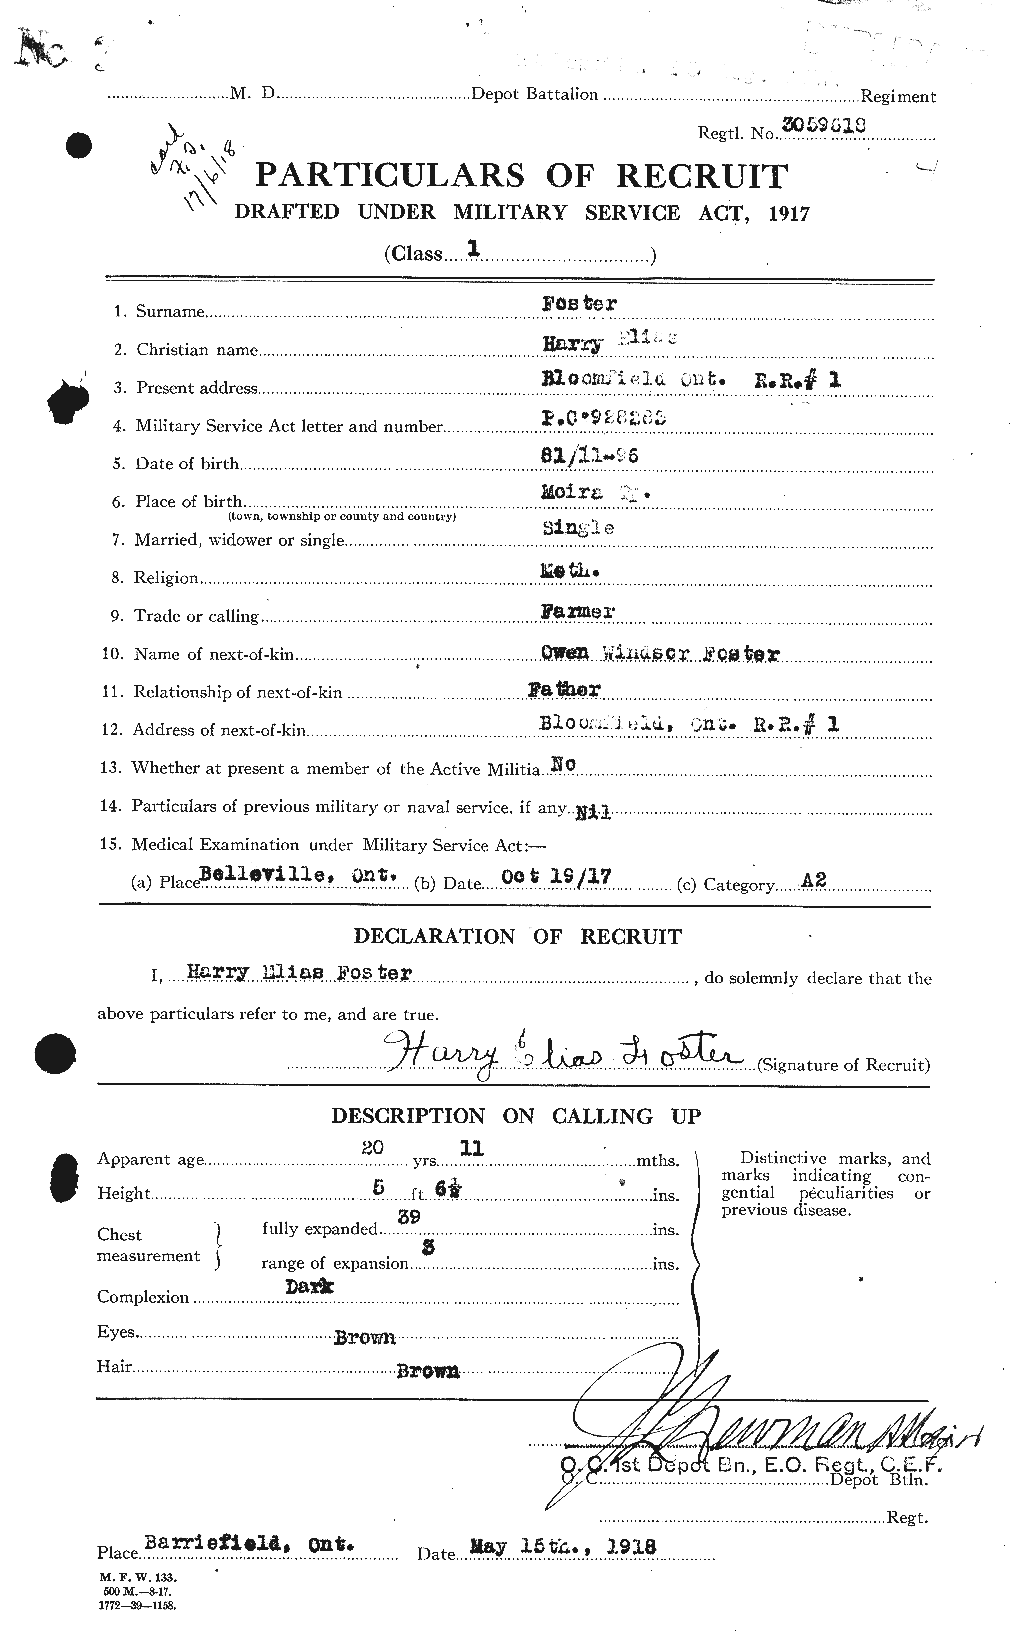 Dossiers du Personnel de la Première Guerre mondiale - CEC 330748a